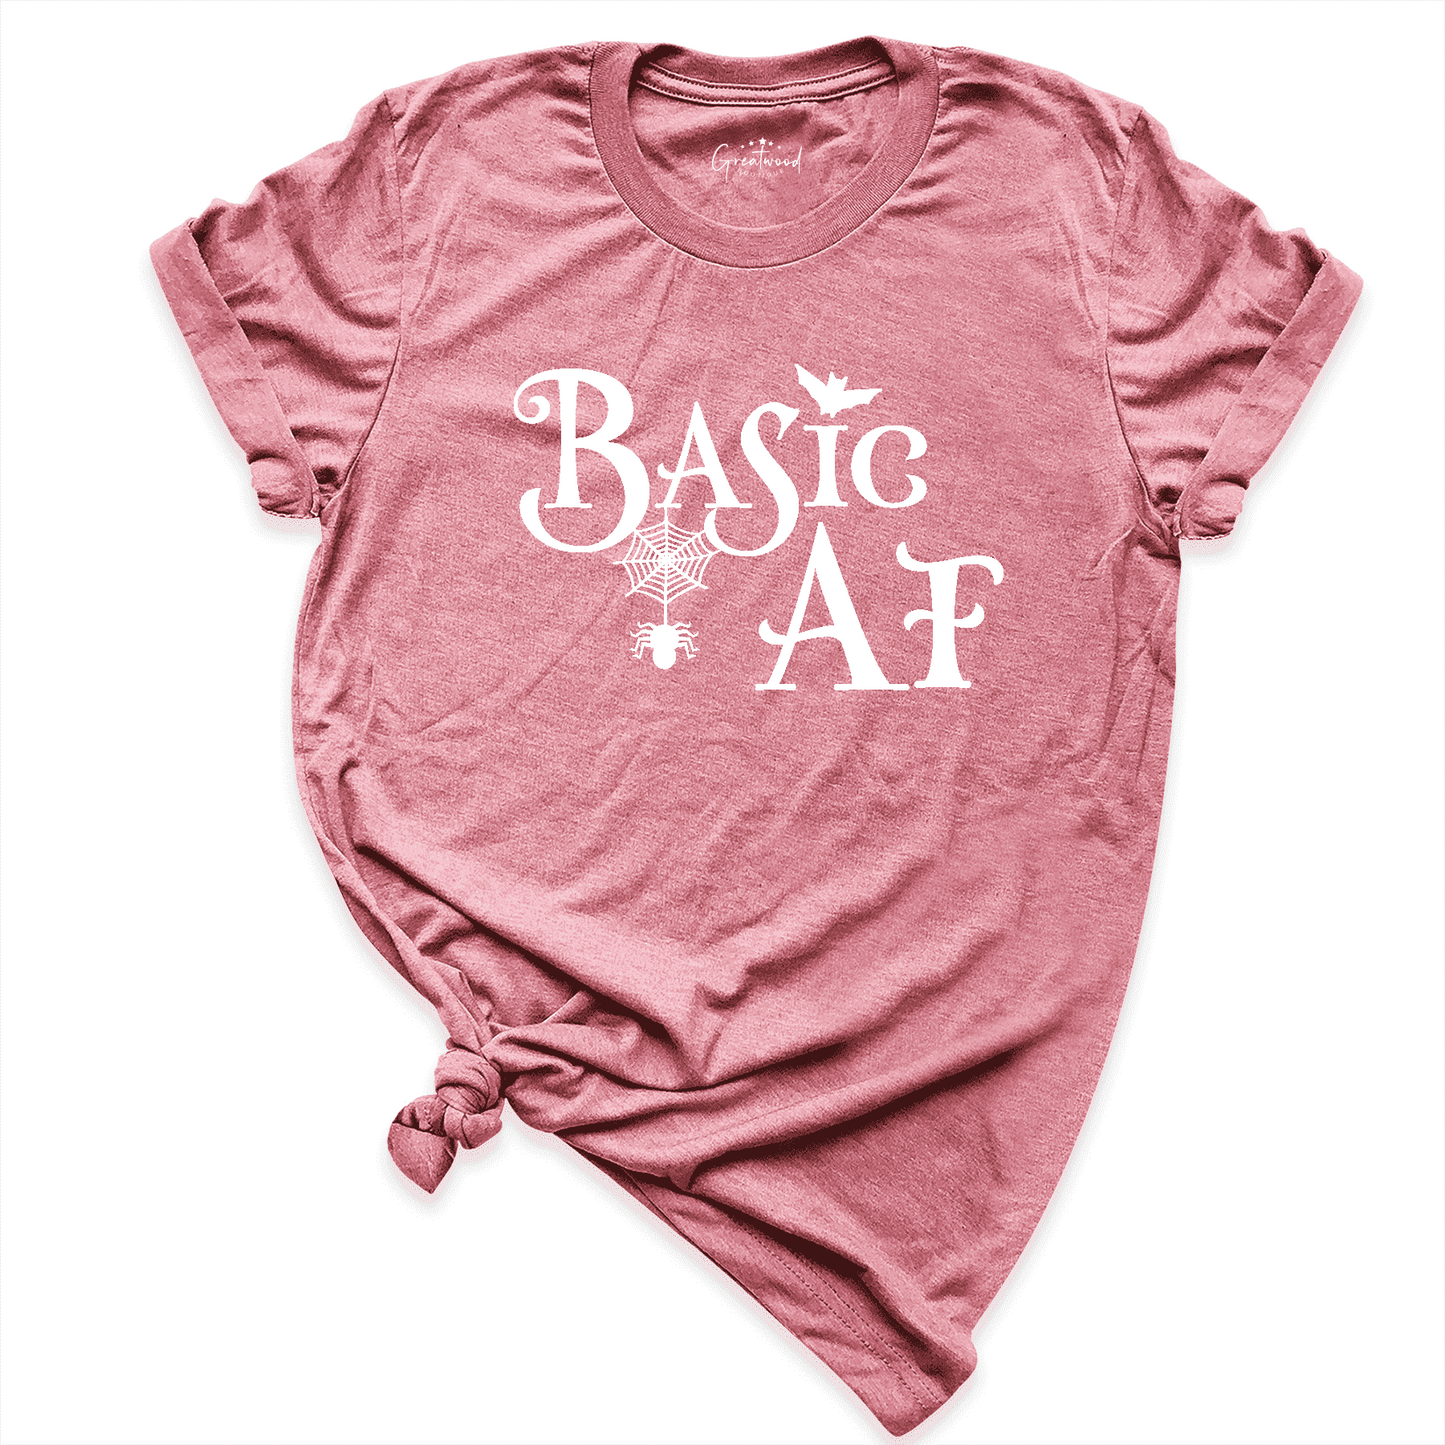 Basic AF Shirt